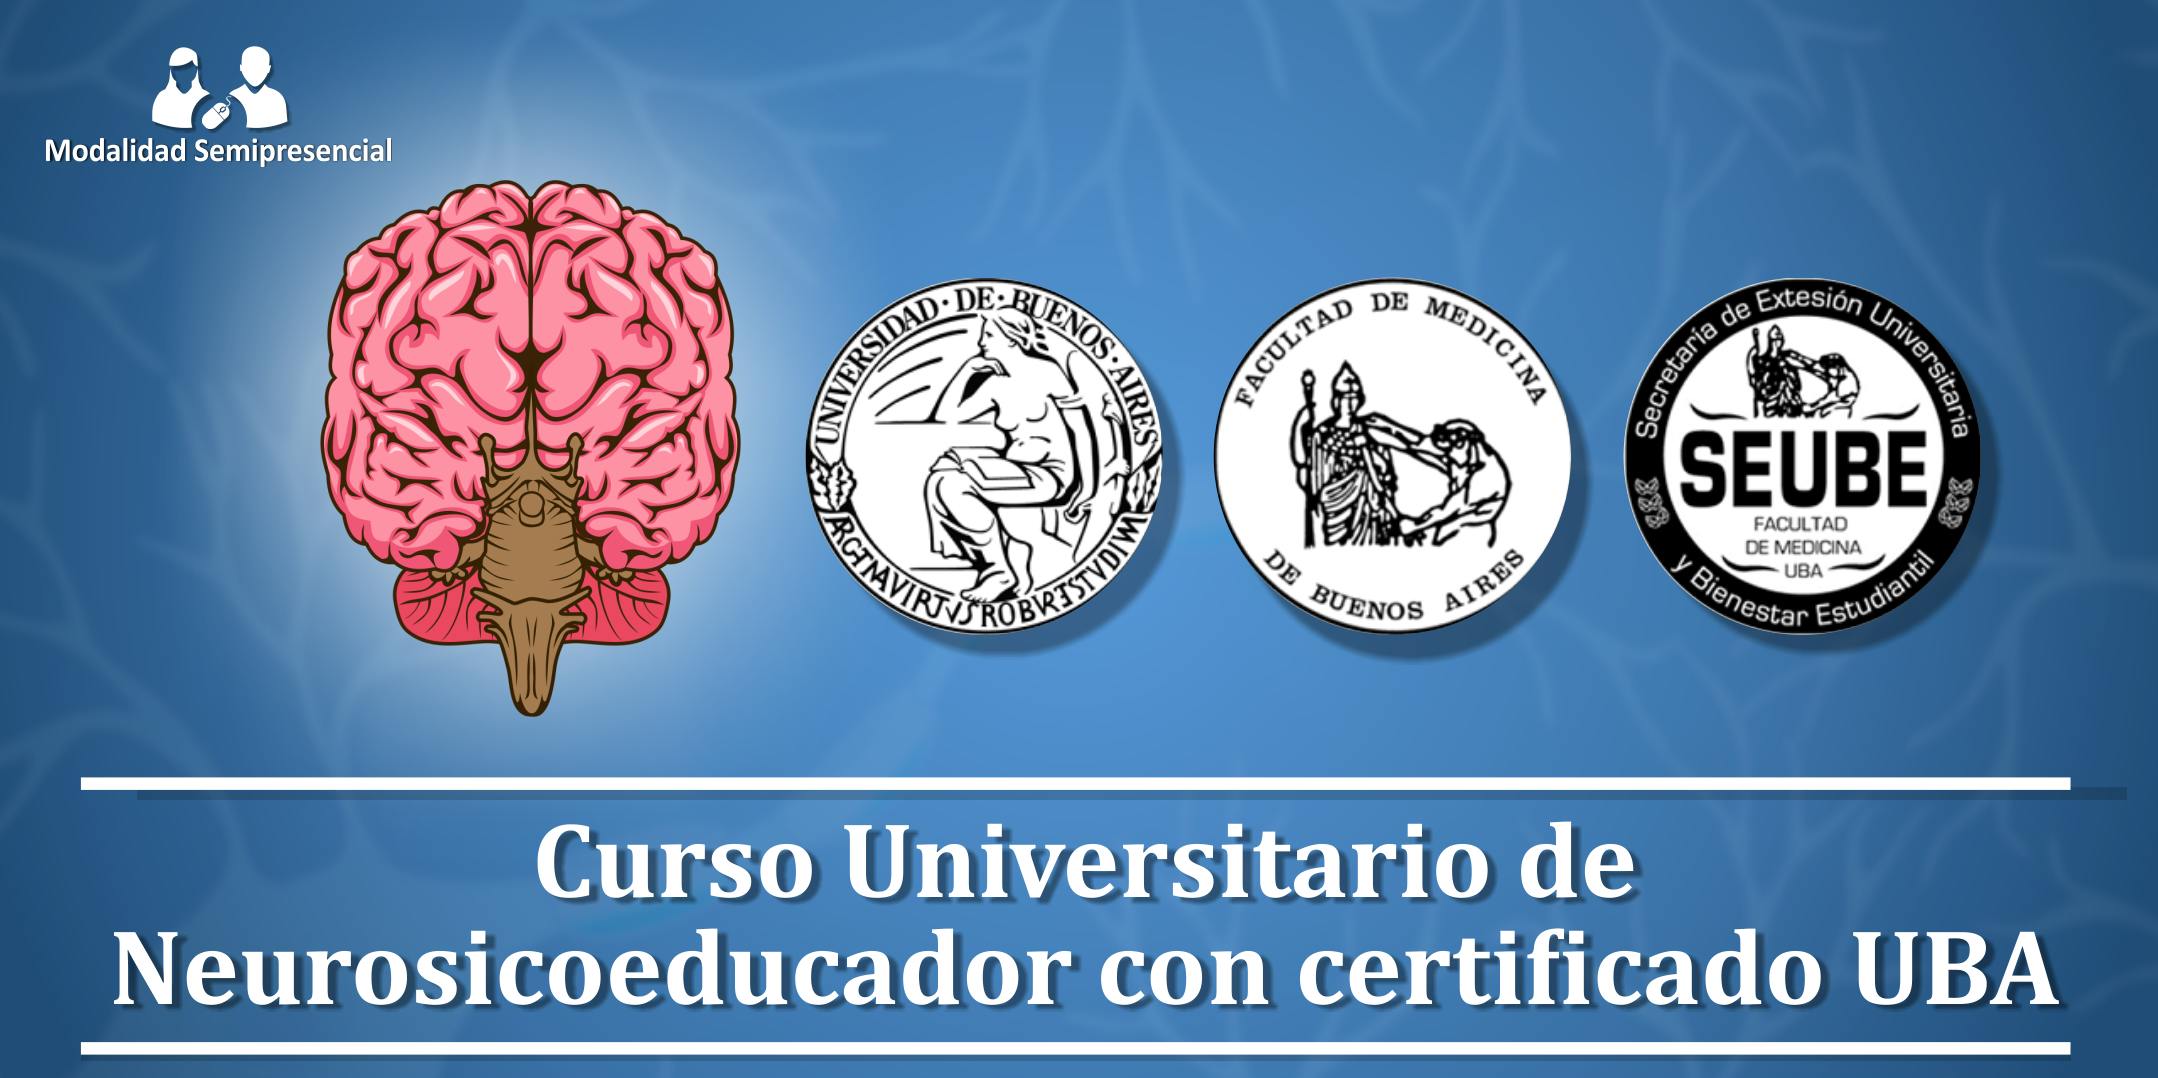 Inicio febrero 2020: Curso Universitario de Neurosicoeducador (UBA)